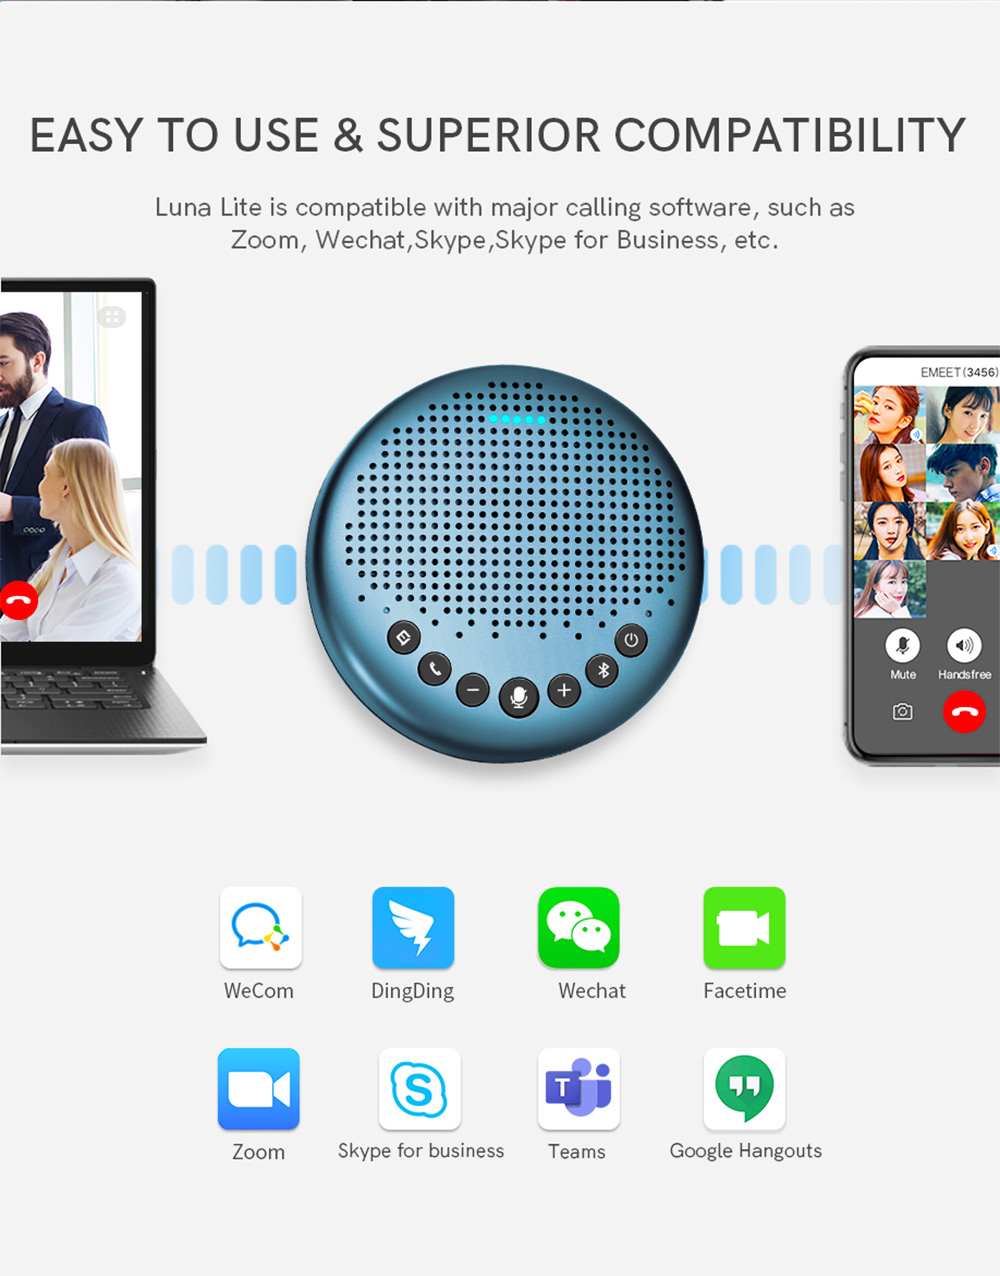 eMeet Luna Lite Portable Computer Speaker VoiceIA Noise Reduction Mode, USB, Bluetooth, AUX connection